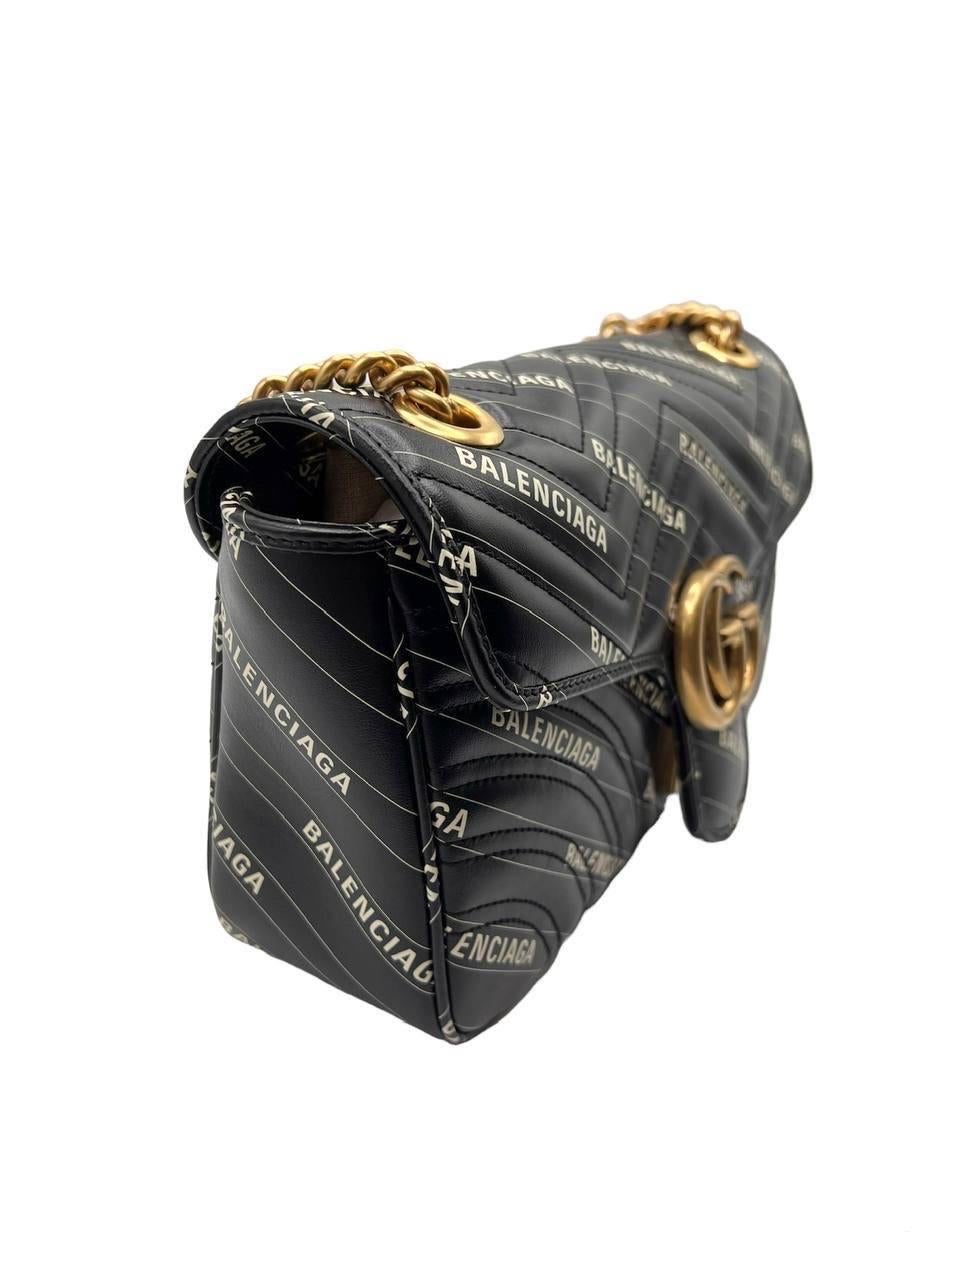 Borsa firmata Gucci in un’iconica collaborazione con il brand Balenciaga, linea Marmont nella misura 26, realizzata in pelle nera con hardware oro. Munita di una patta frontale con chiusura ad incastro. Dotata di una tracolla in catena oro e nera a